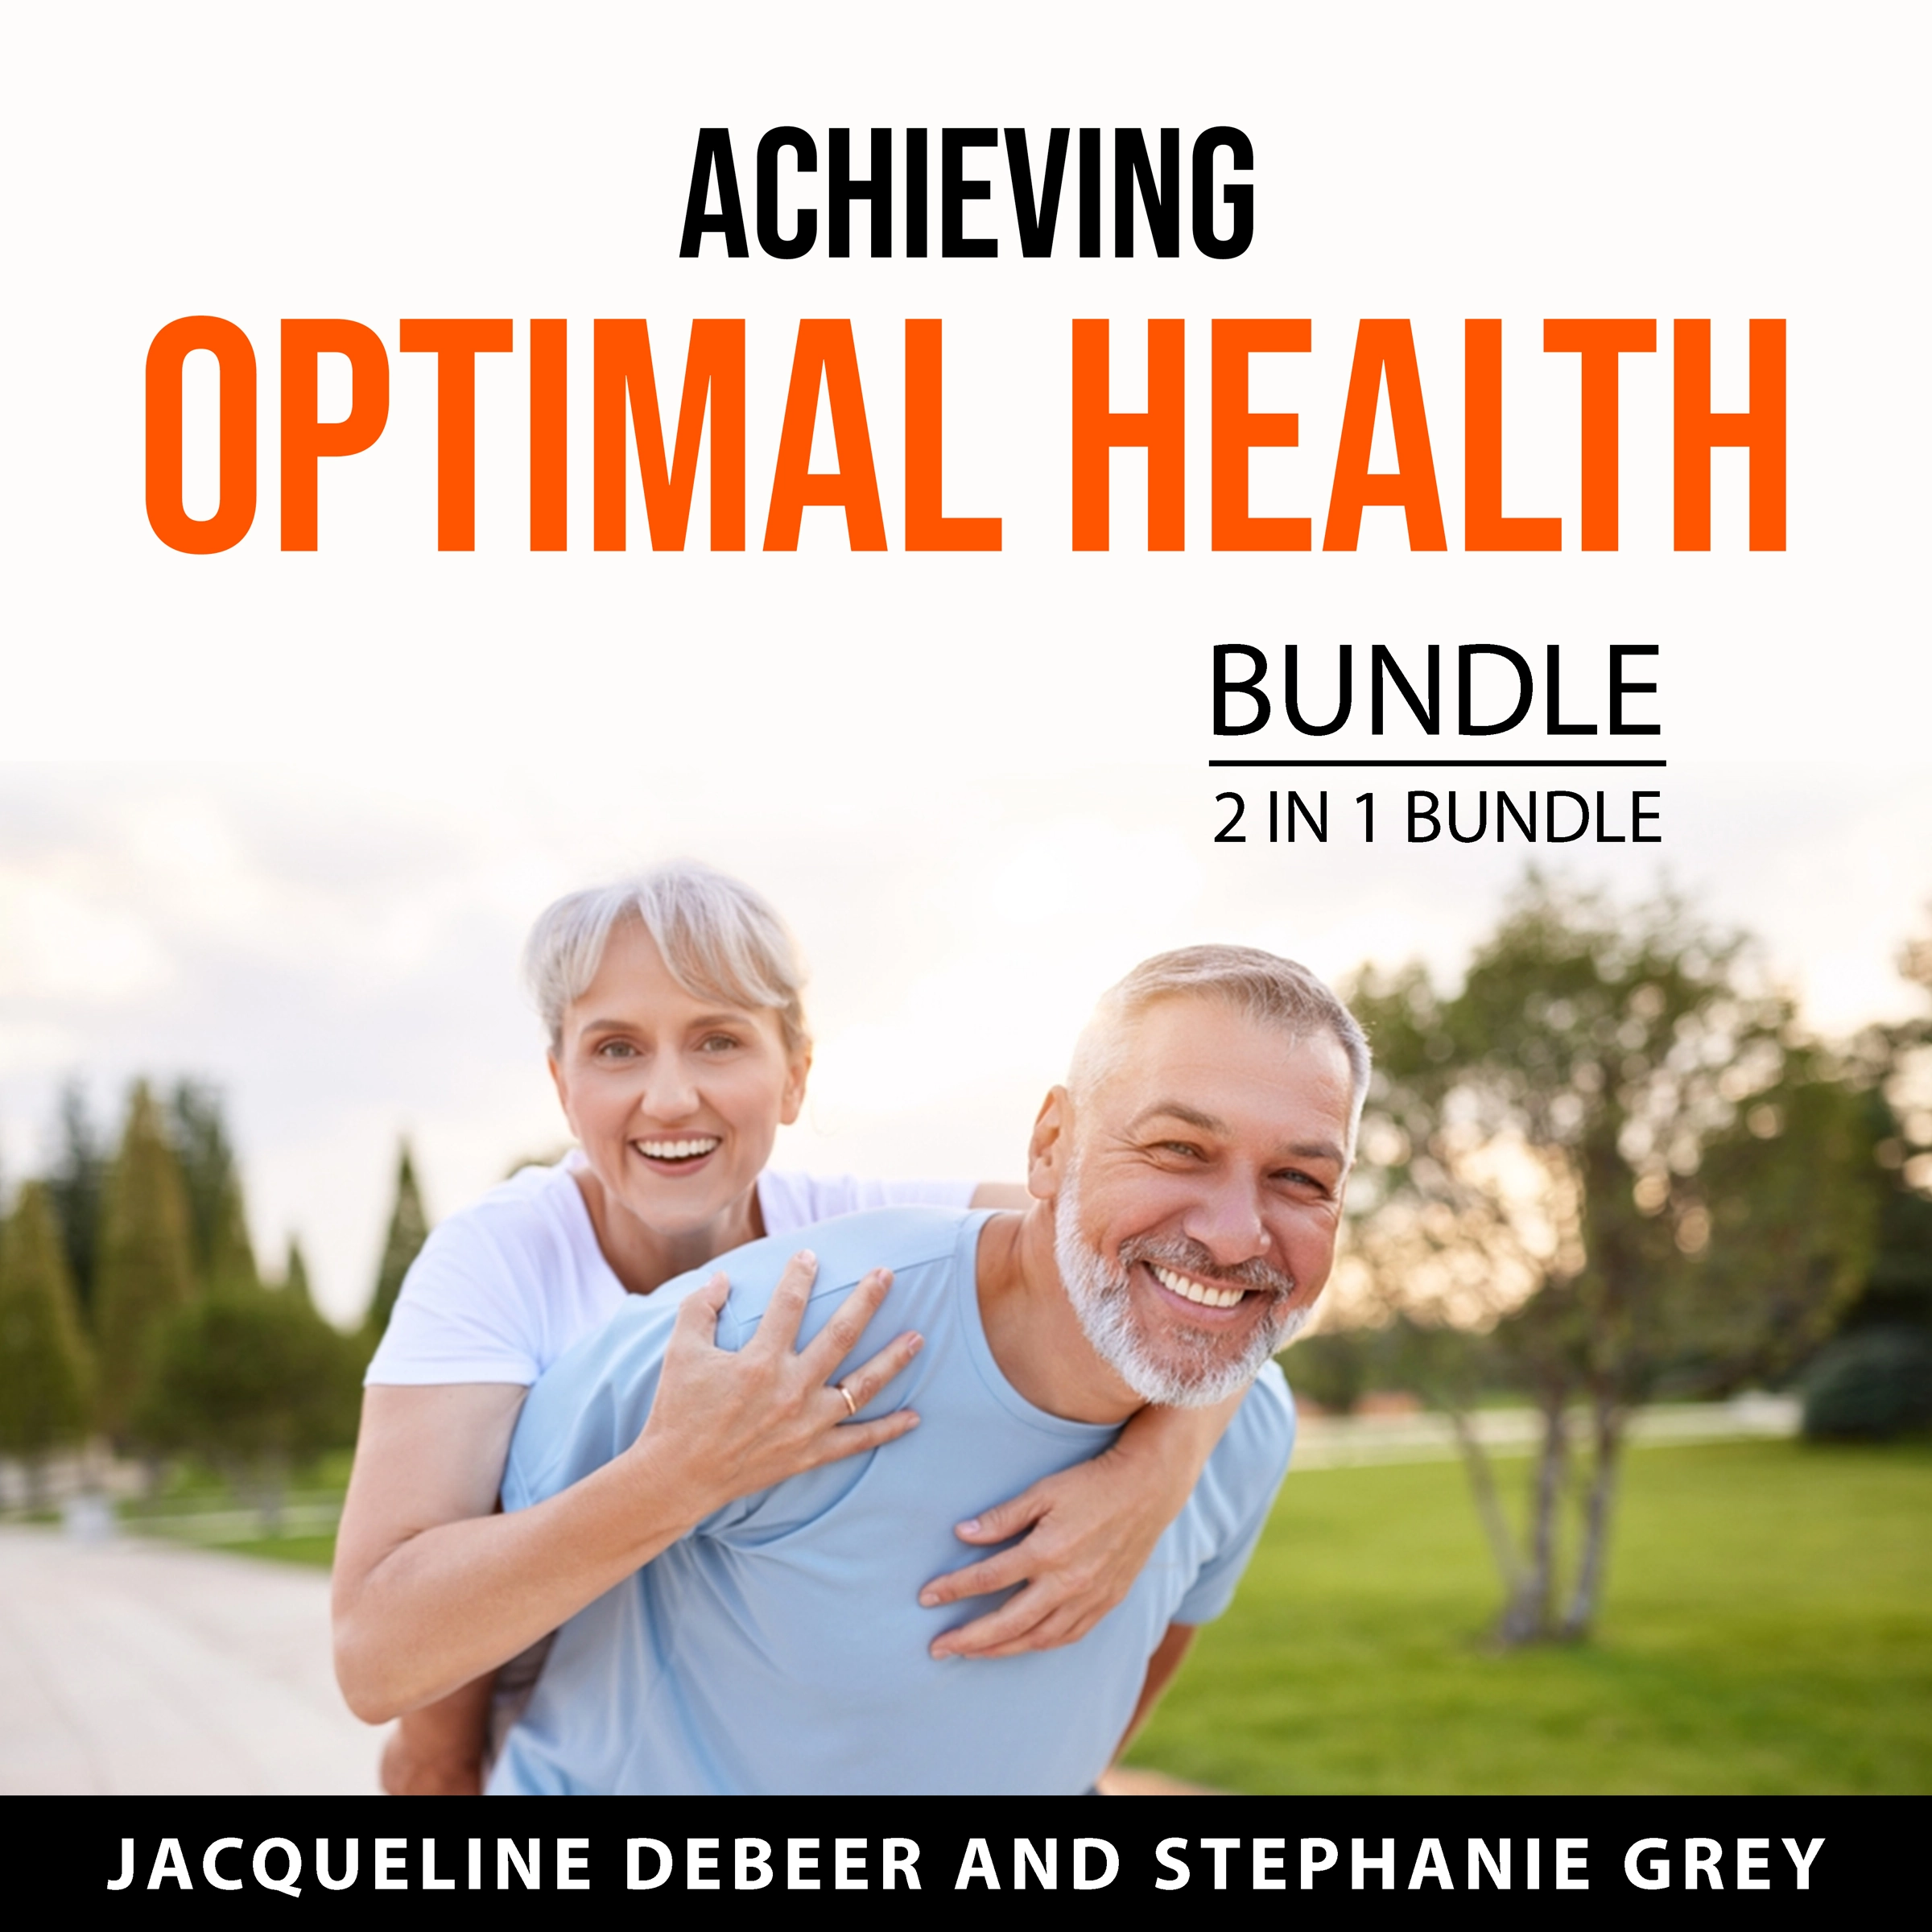 Achieving Optimal Health Bundle, 2 in 1 Bundle Audiobook by Stephanie Grey